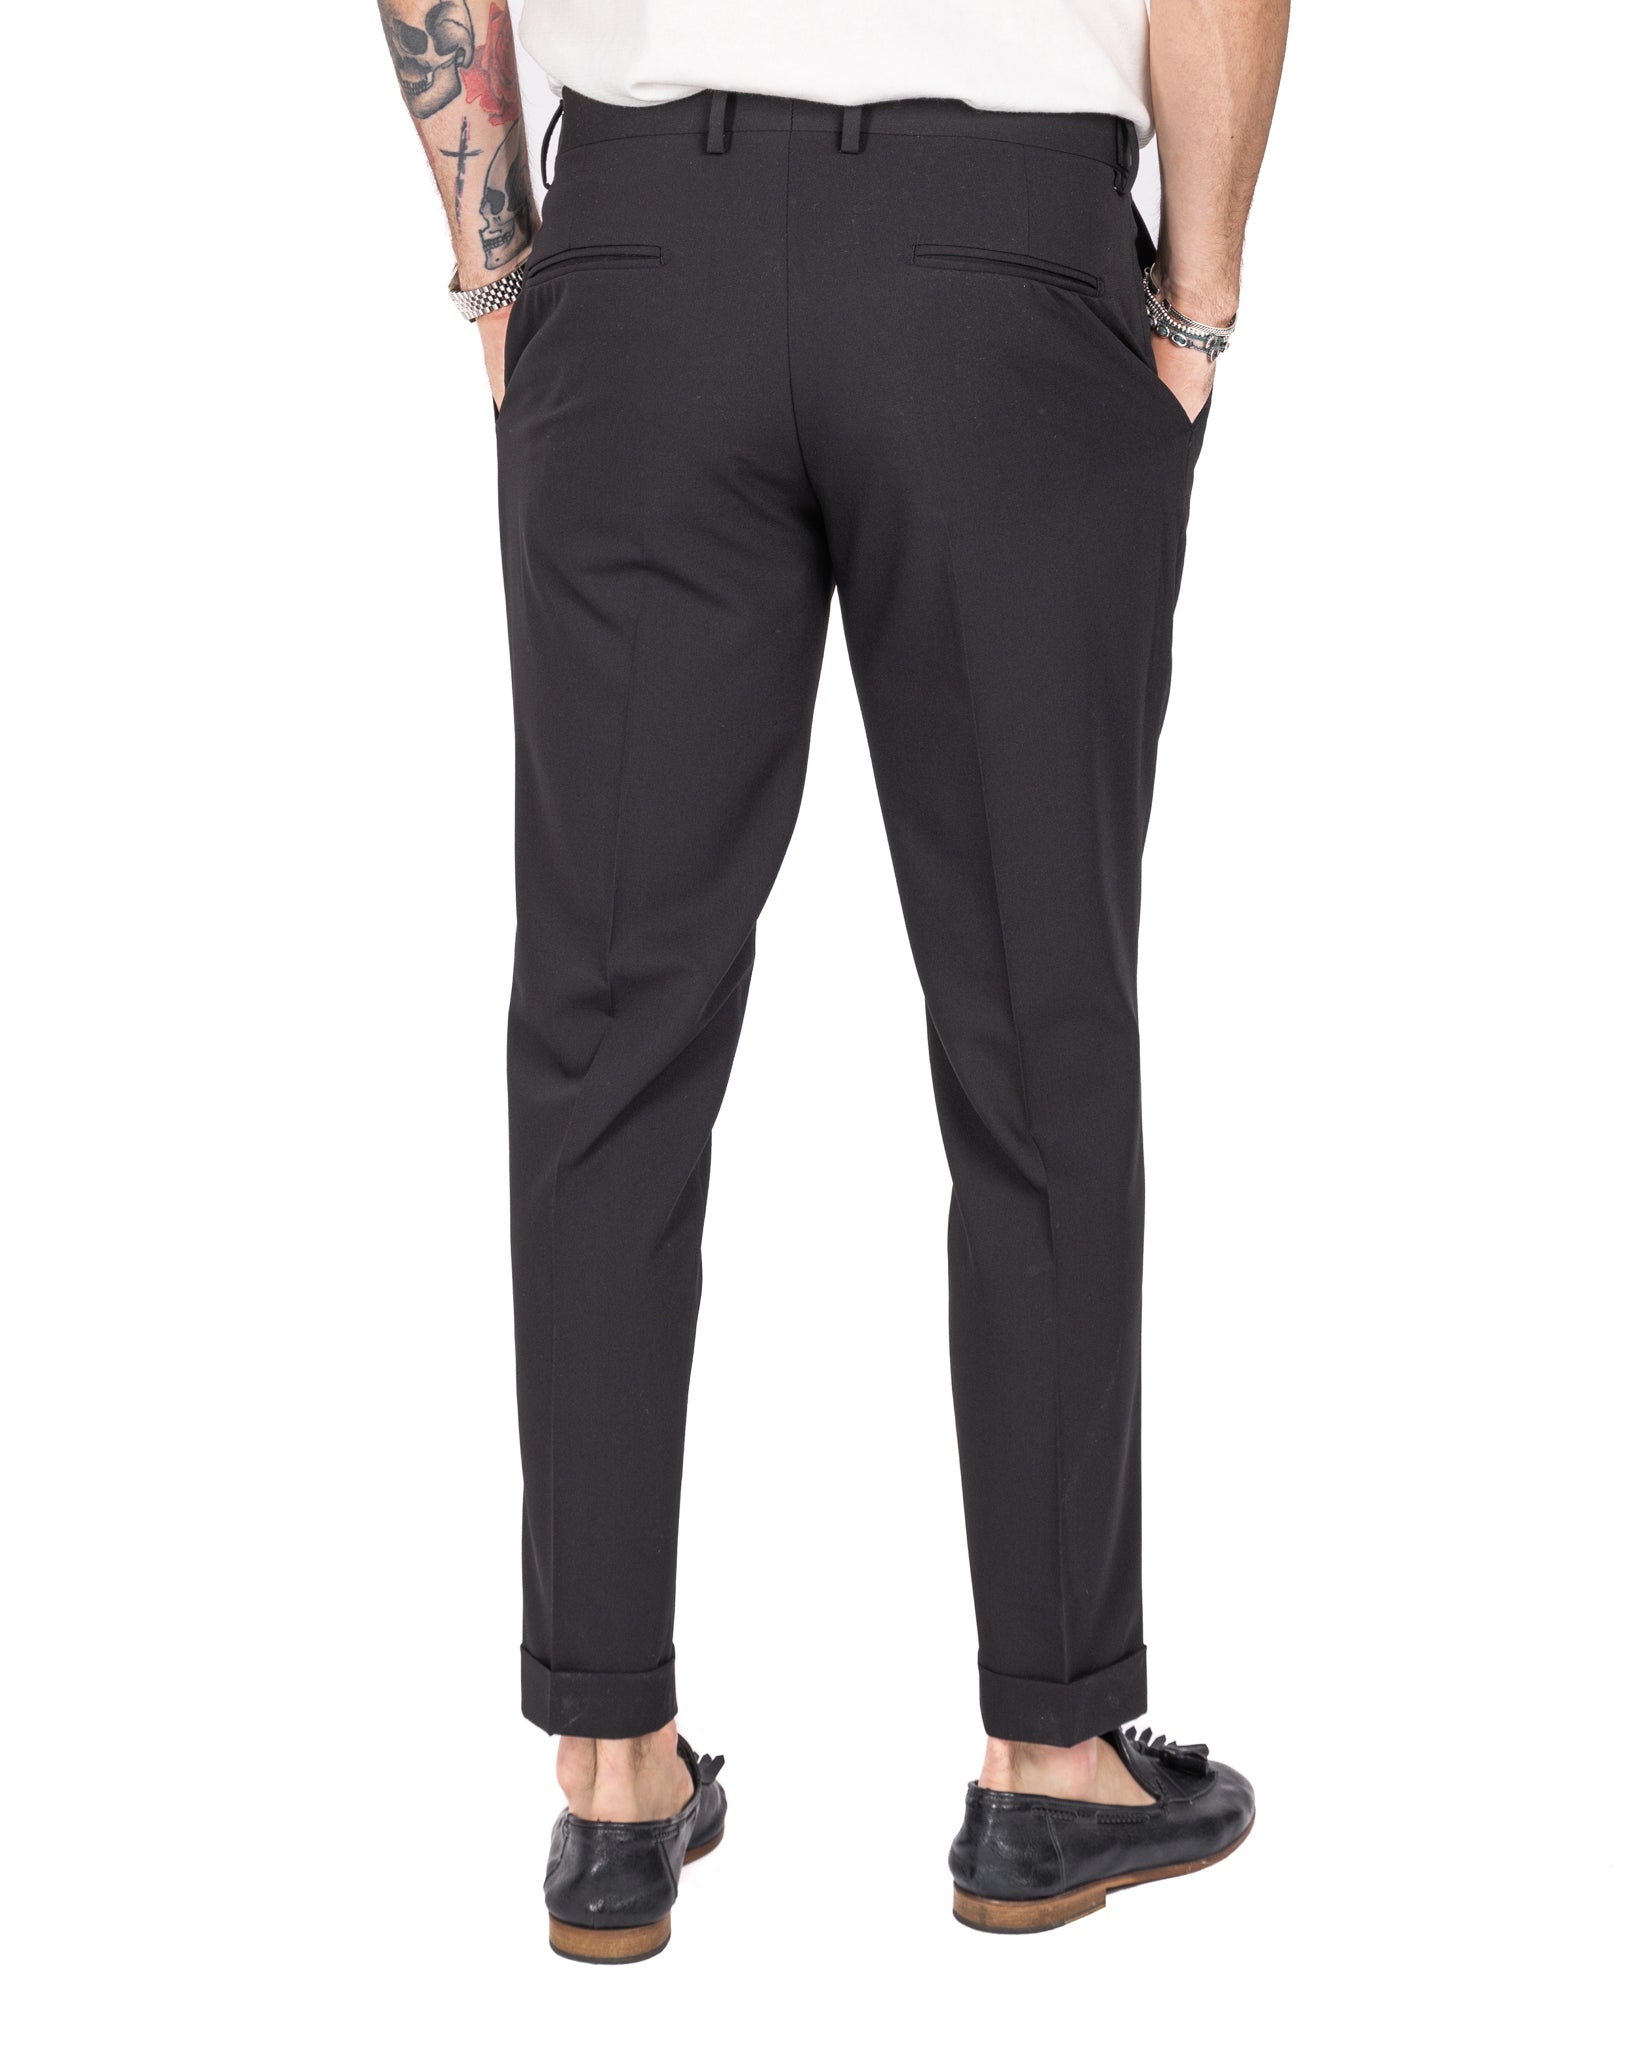 Milan - black basic trousers